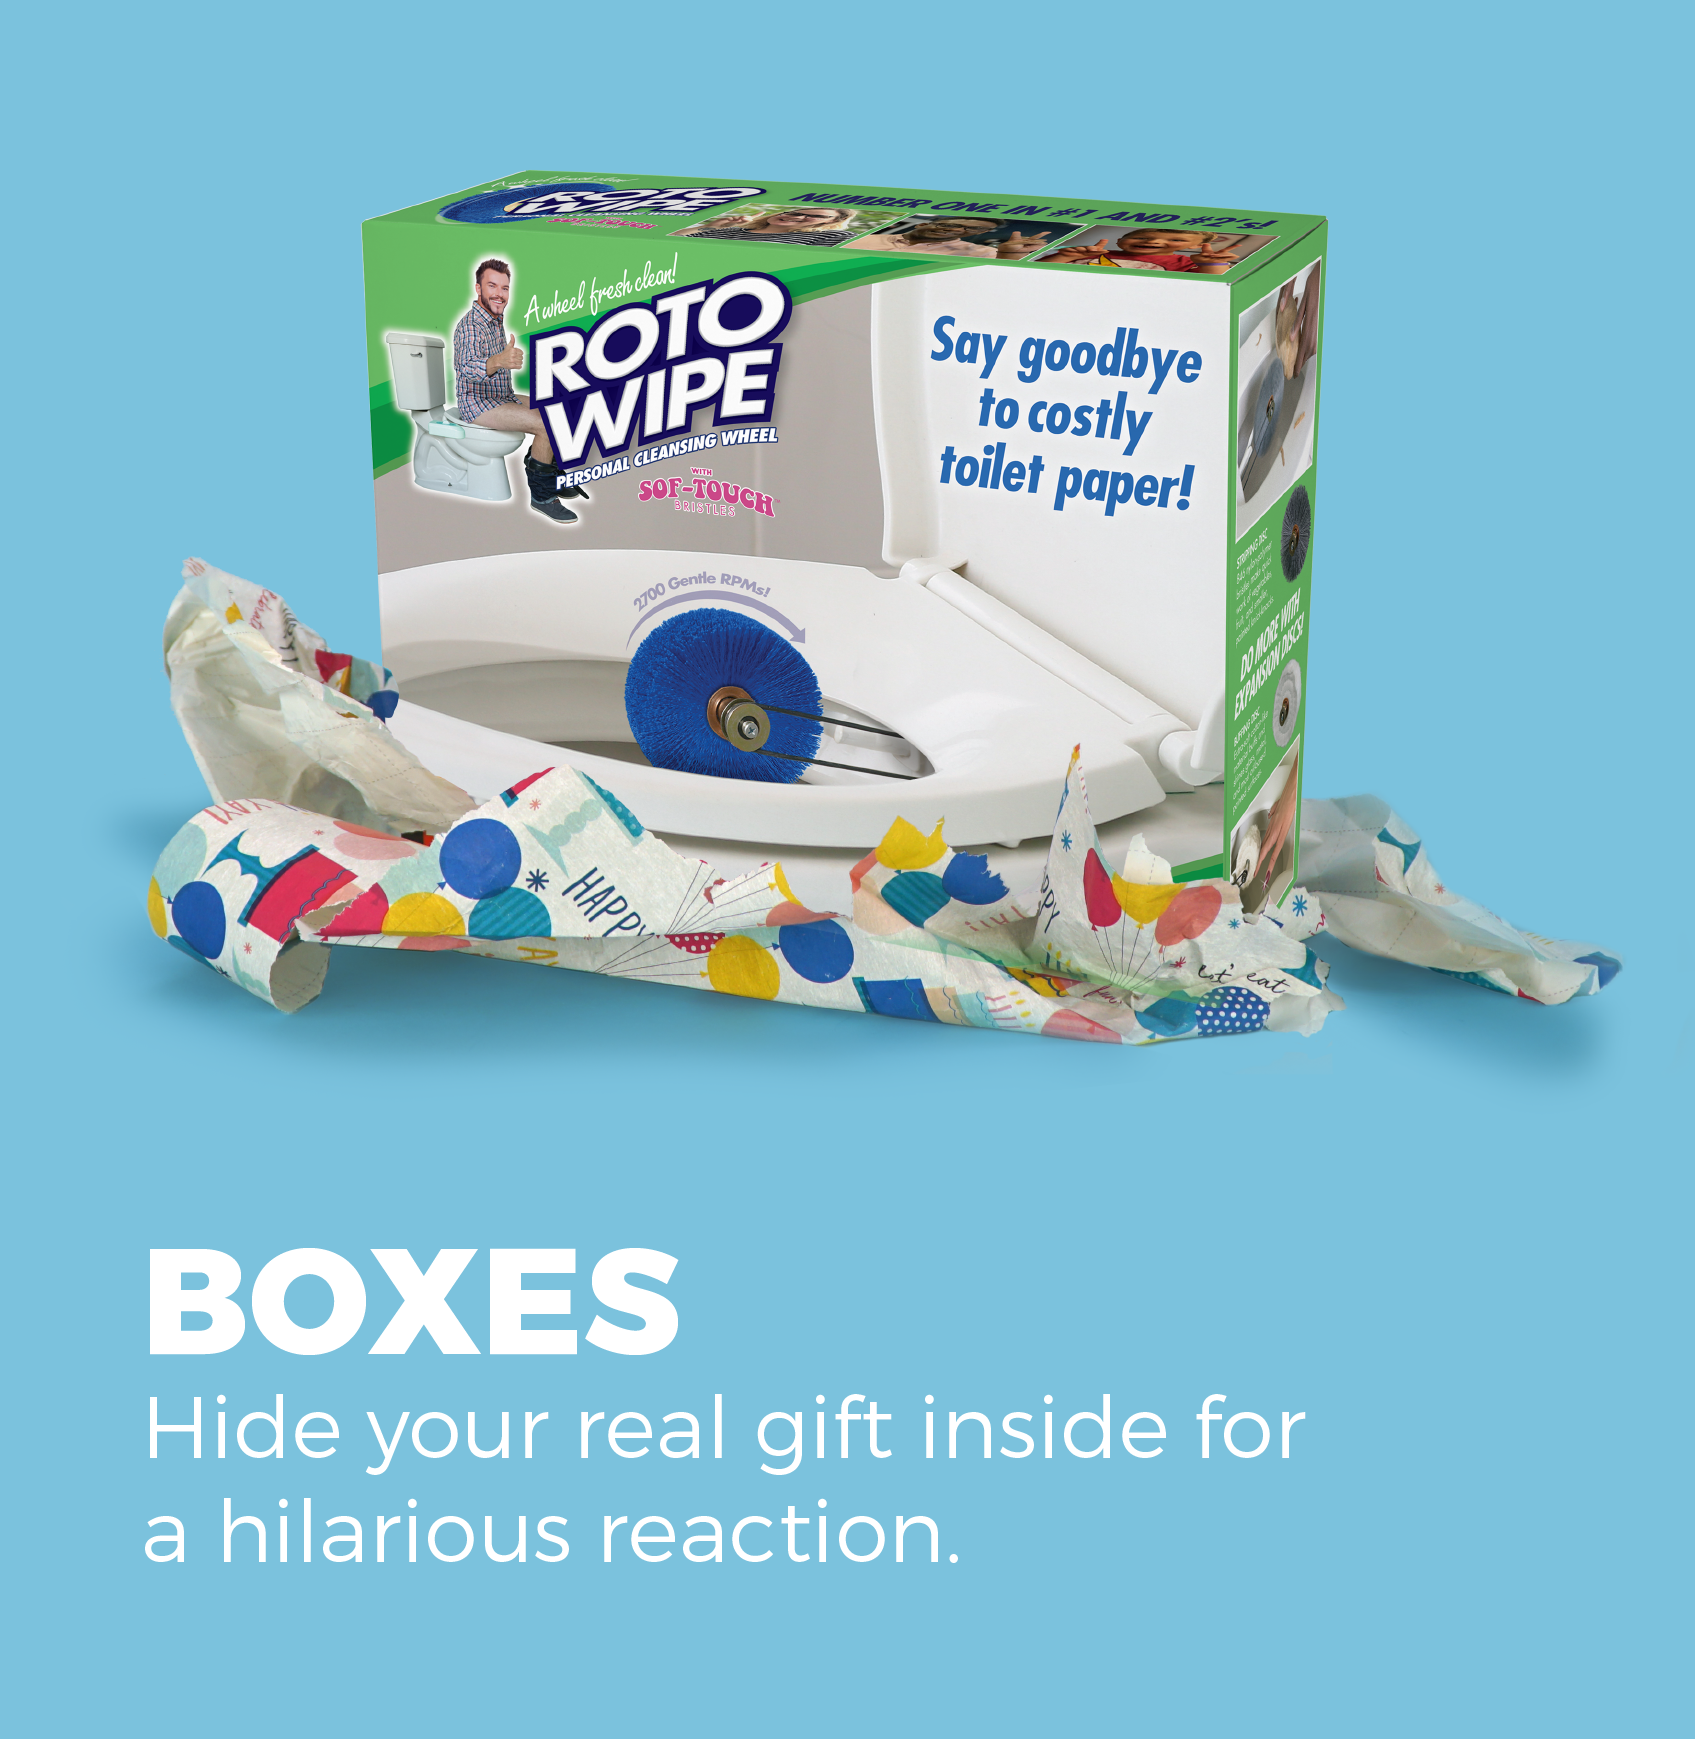 Finger Box NOTHING Prank Mail Post Gift Box Gag Funny Birthday